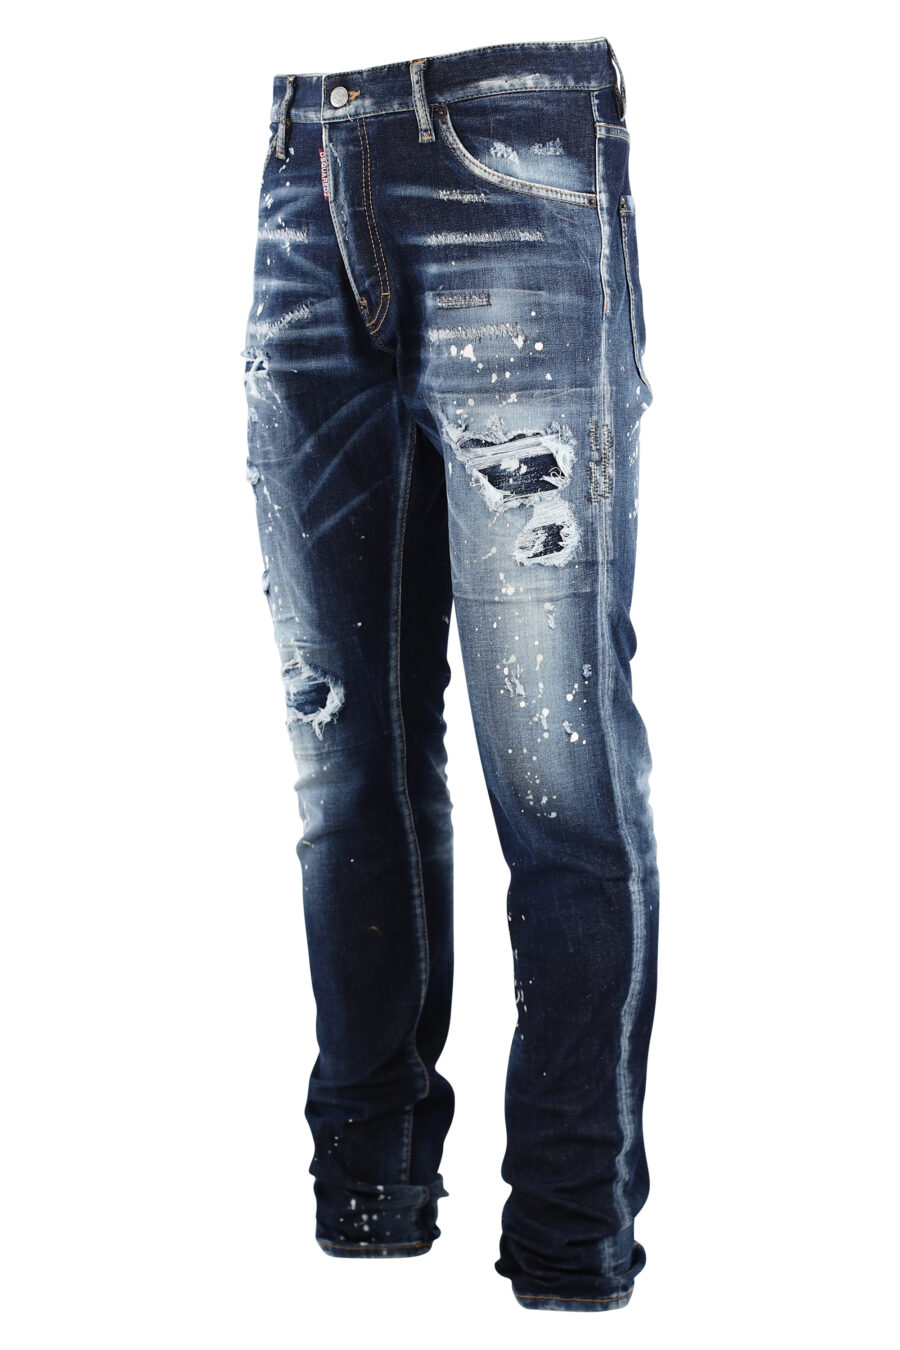 Coole Jeanshose, blau, mit weißer Farbe und Rissen - IMG 7542